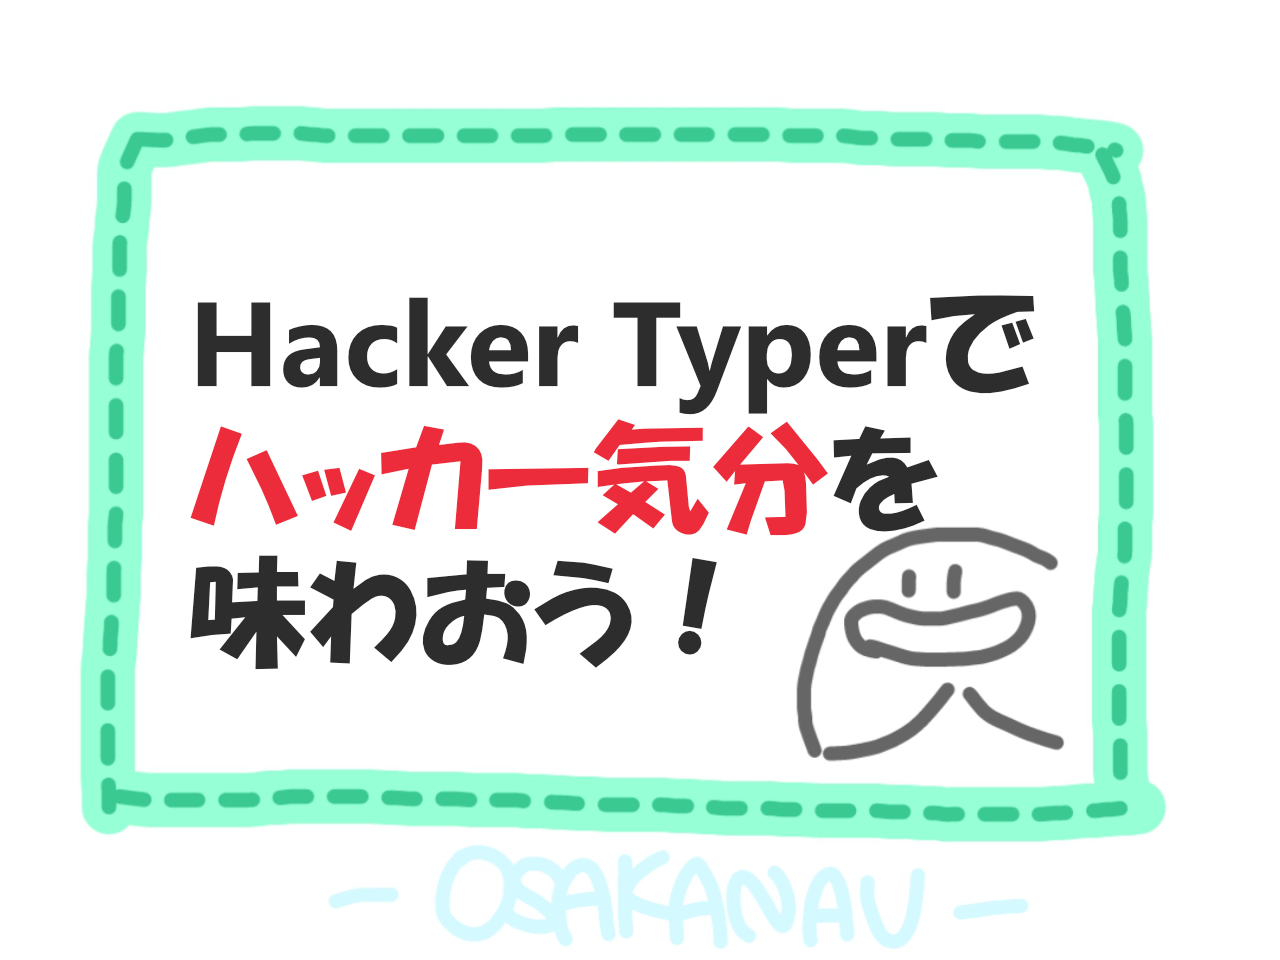 ハッカー気分 が体験できちゃうサイト Hacker Typer とは